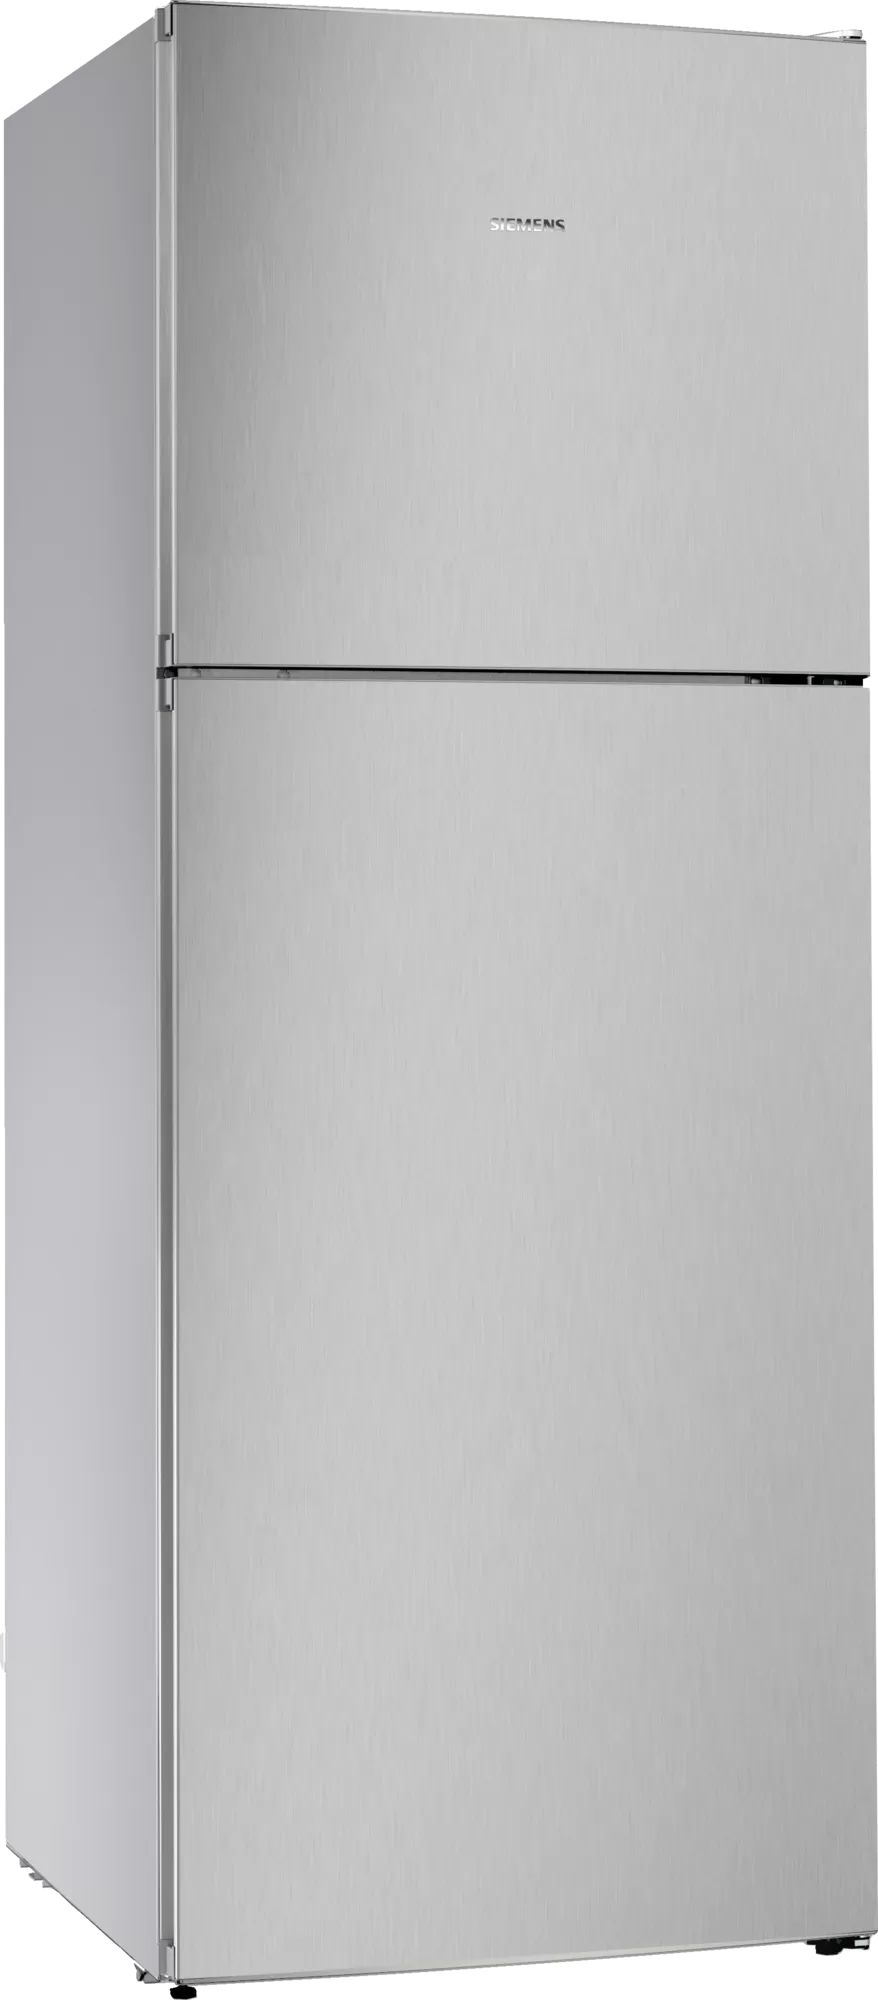 фото Холодильник siemens kd55nnl20m iq300 серебристый